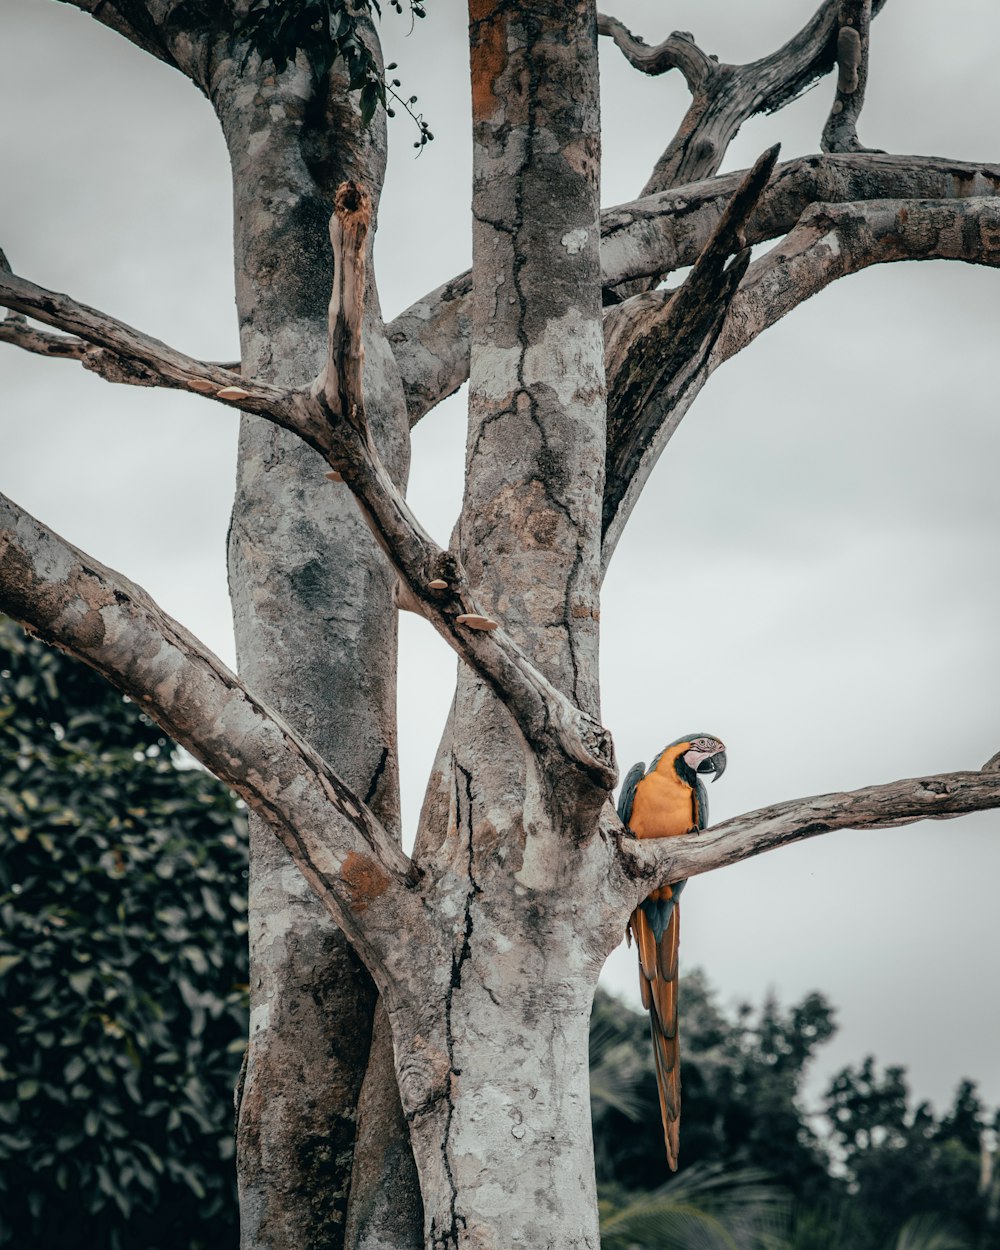 arara-azul-e-amarela empoleirando-se na árvore